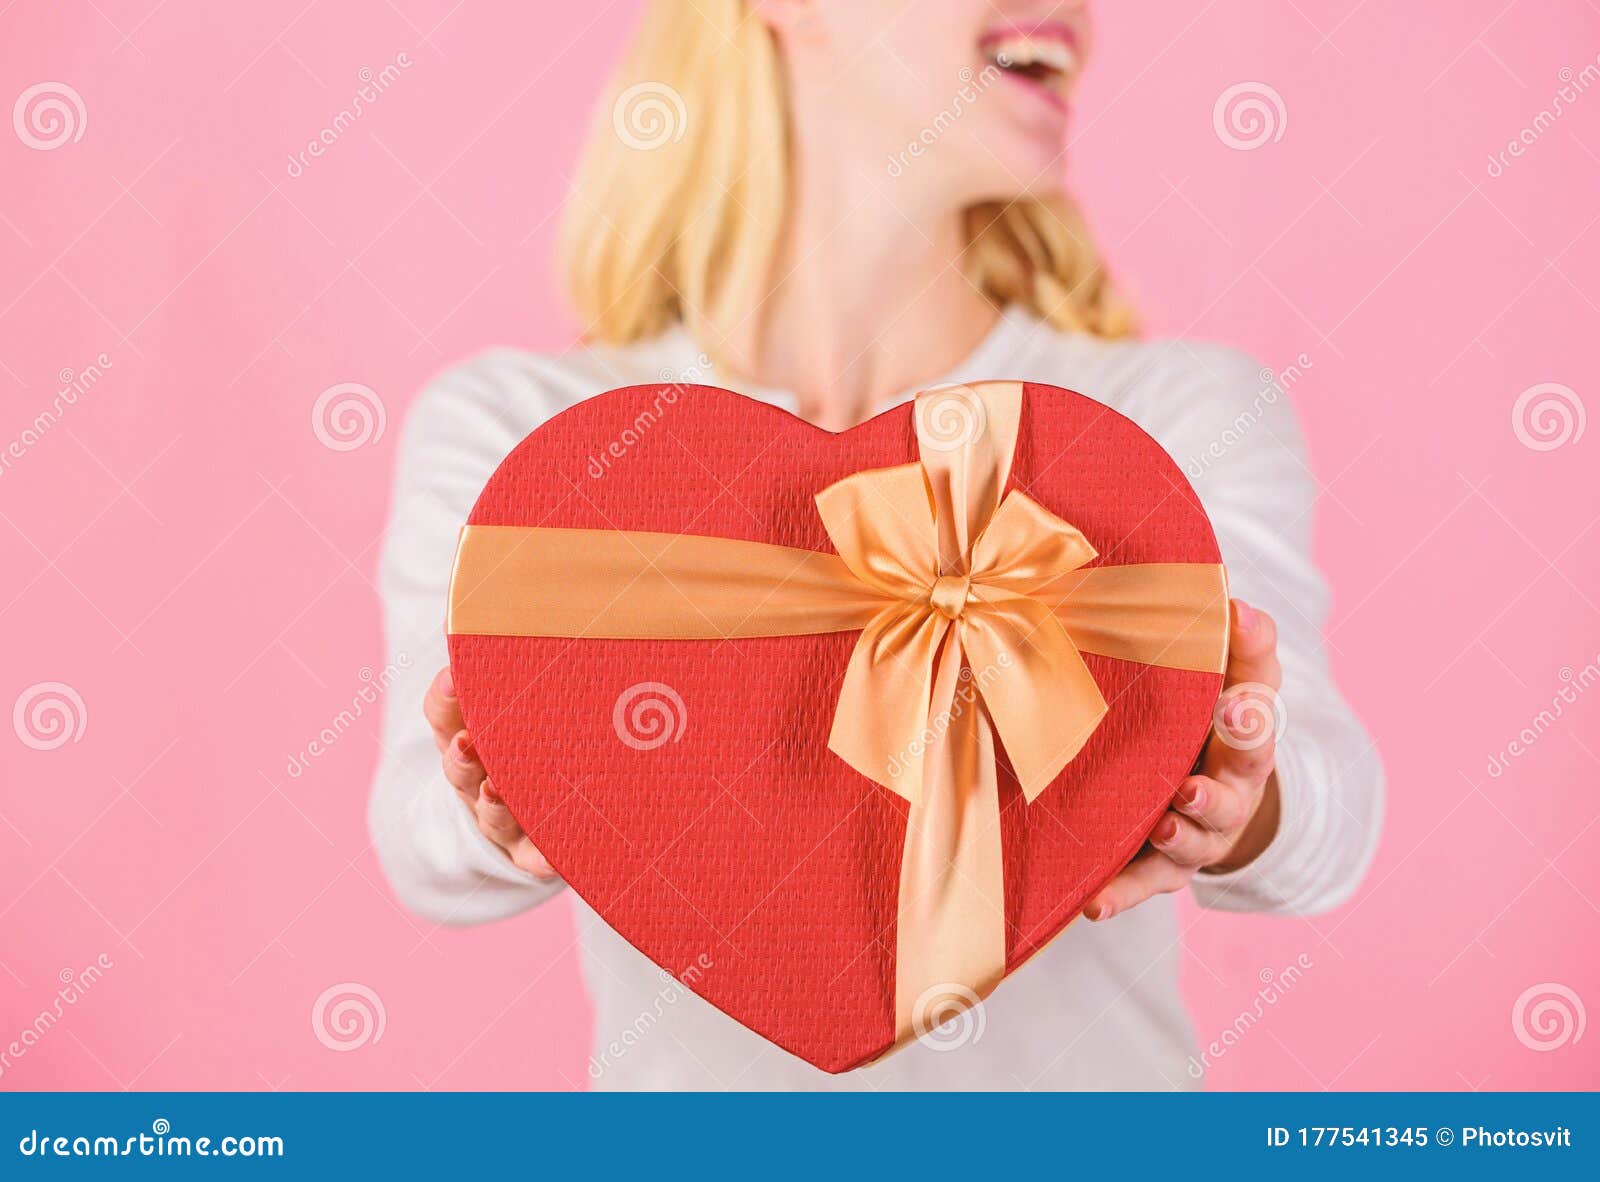 Love Gift Box for Boyfriend | Diy birthday gifts, Birthday gifts for  boyfriend, Diy gifts